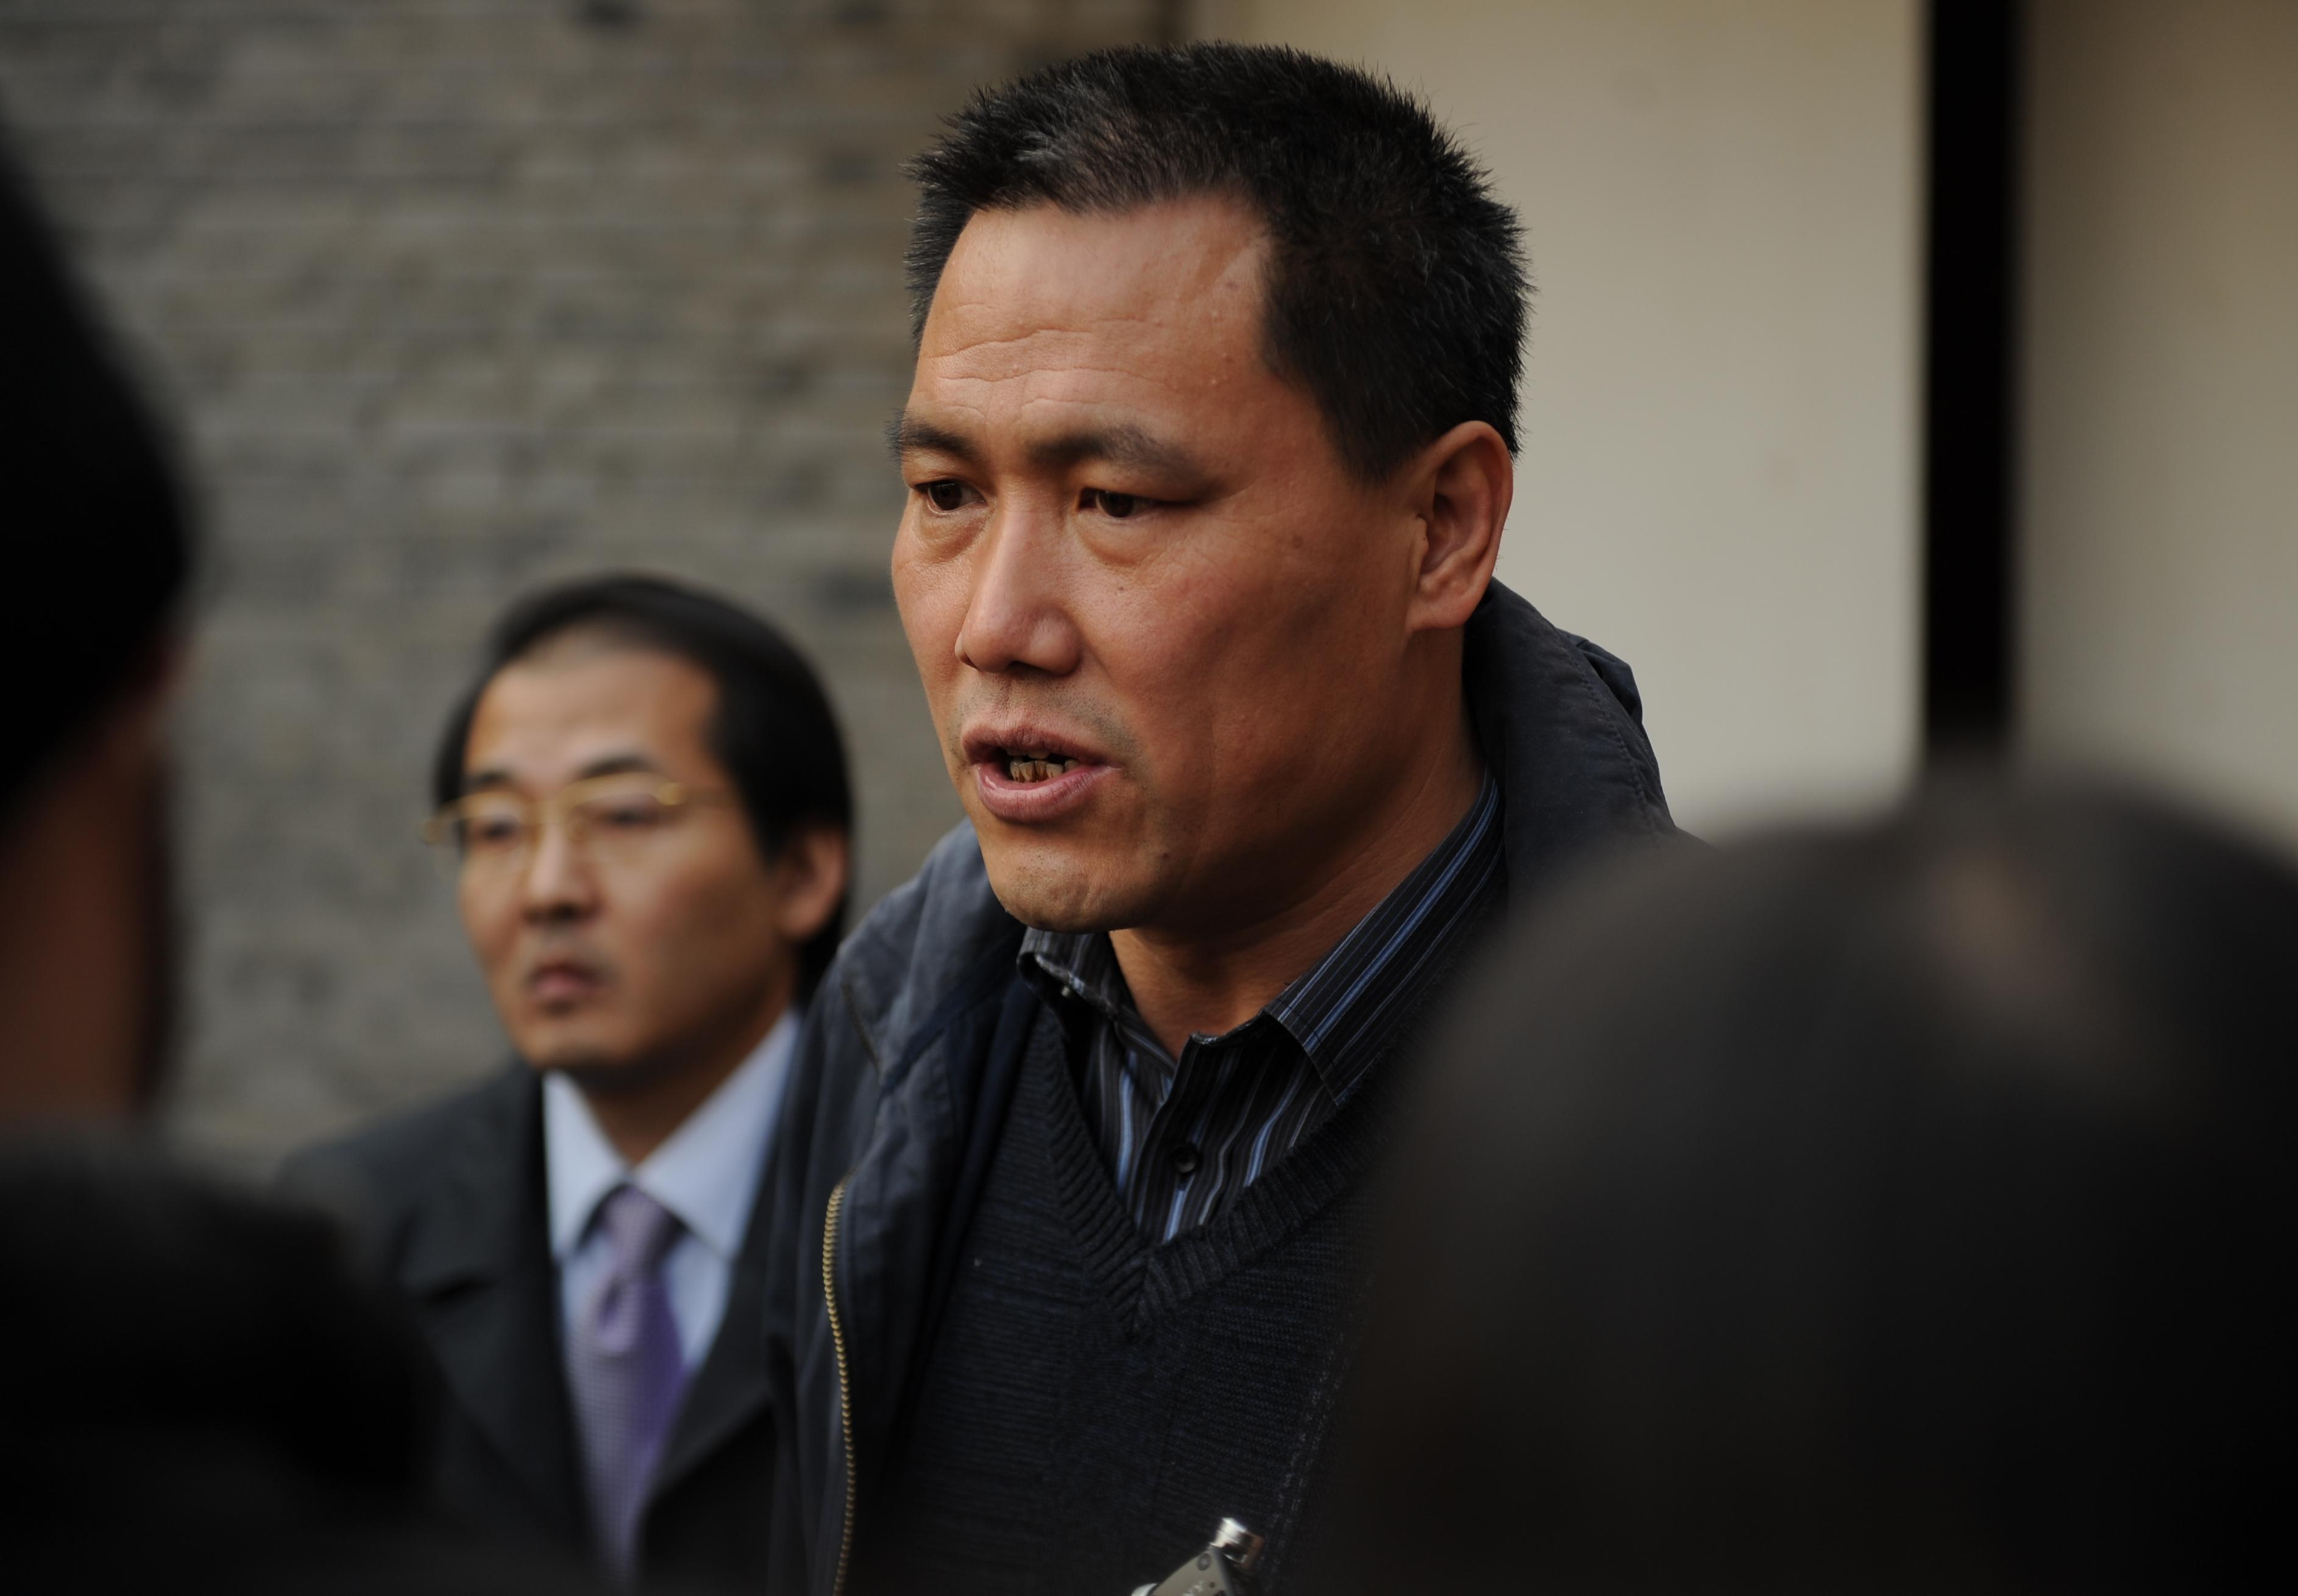 Advokaten Pu Zhiqiang, som bland annat försvarat konstnären Ai Weiwei, fick sin dom under tisdagen den 22 december: Tre år villkorligt för ”anstiftan till etniskt hat” och för att ha ”startat bråk och provocerat fram oroligheter”. (Foto: Peter Parks/AFP/Getty Images)